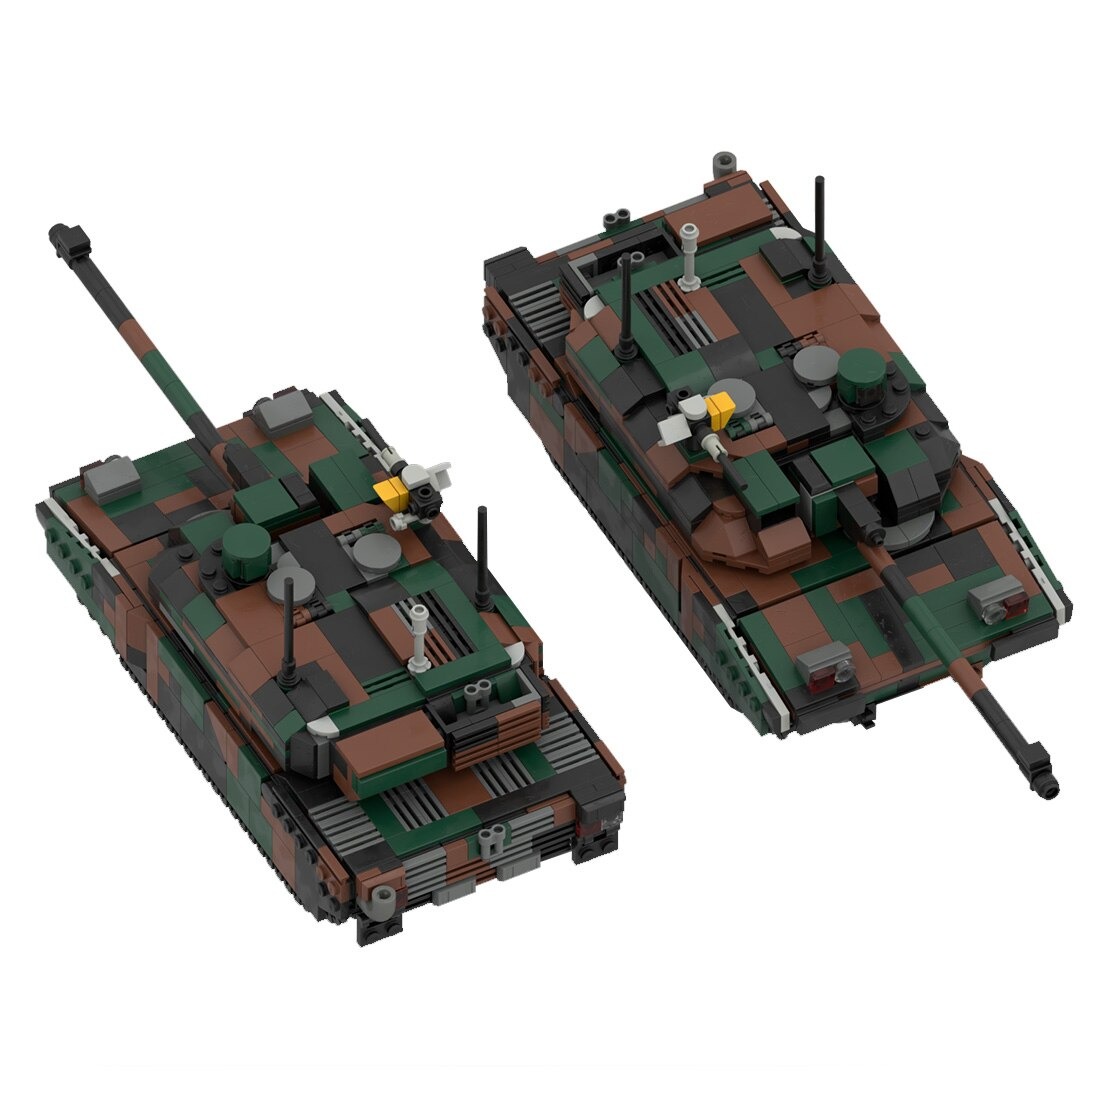 moc 34858 leclerc main battle tank model main 4